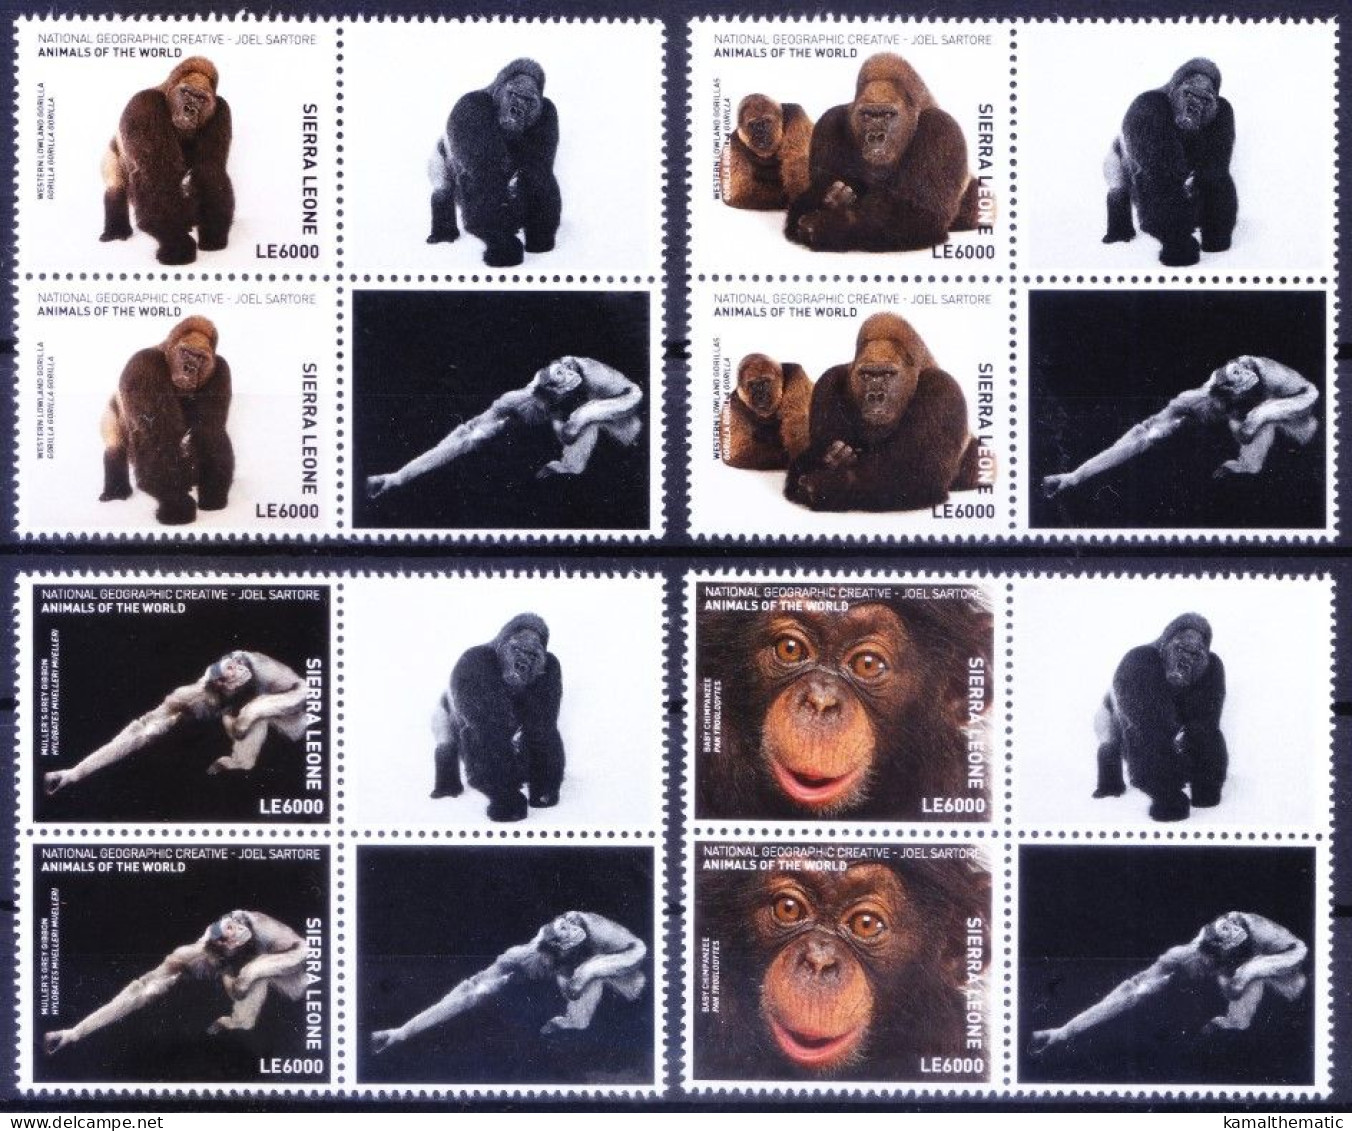 Apes Orangutan Gorilla, Monkeys, Sierra Leone 2017 MNH 4v Vertical Pair, Wild Animals - Gorillas